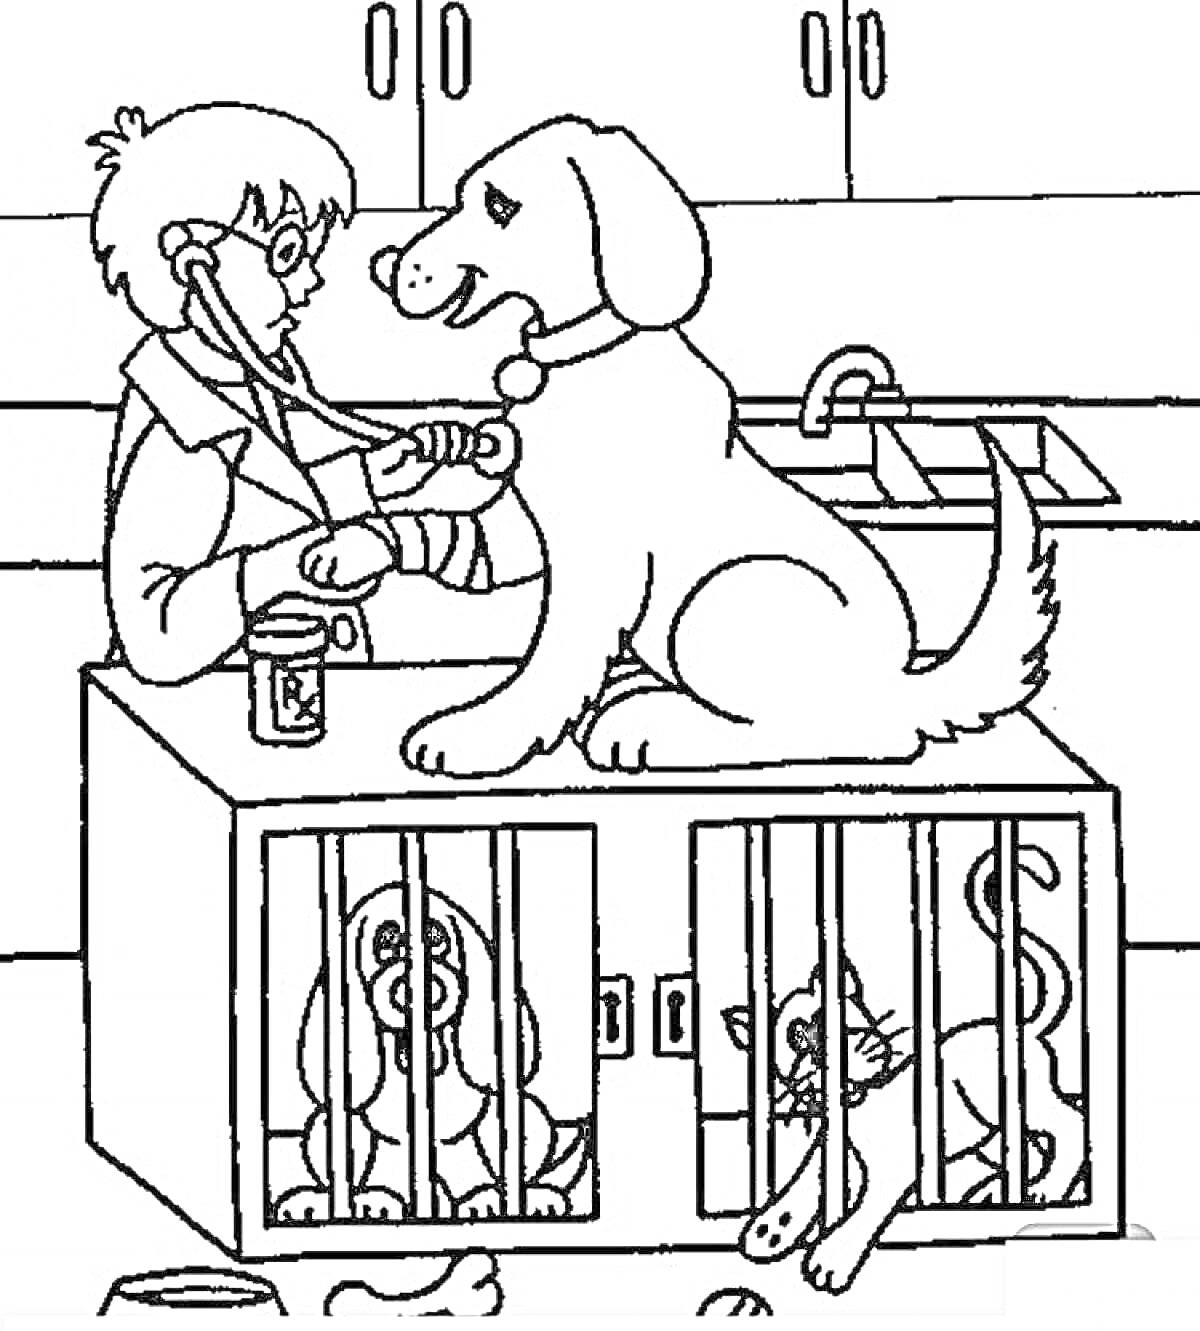 Раскраска Ветеринар осматривает собаку на столе в клинике, в клетках под столом находится собака и кот